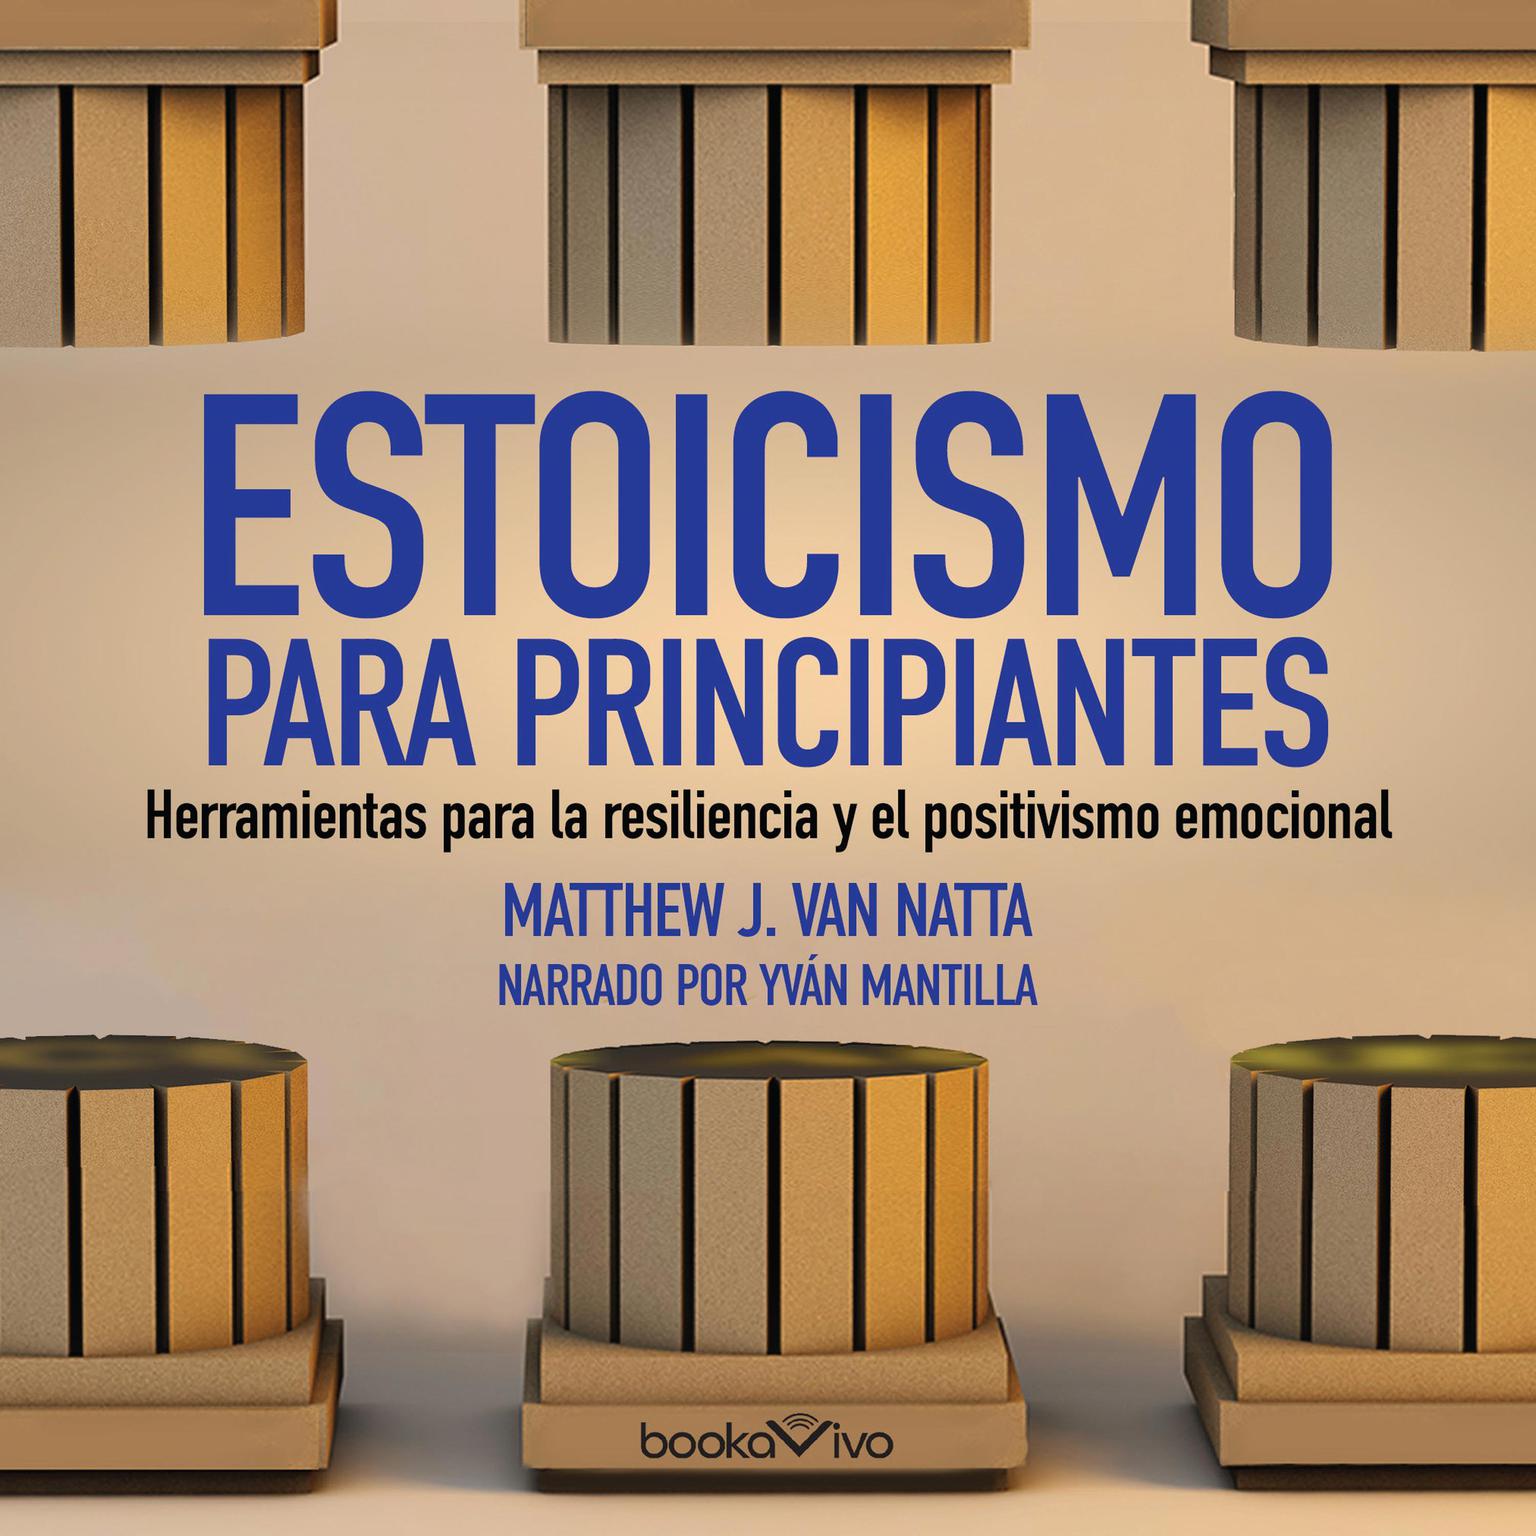 Estoicismo para principiantes (The Beginners Guide to Stoicism): Herramientas para la resiliencia y el positivismo emocional (Tools for Emotional Resilience and Positivity) Audiobook, by Matthew Van Natta